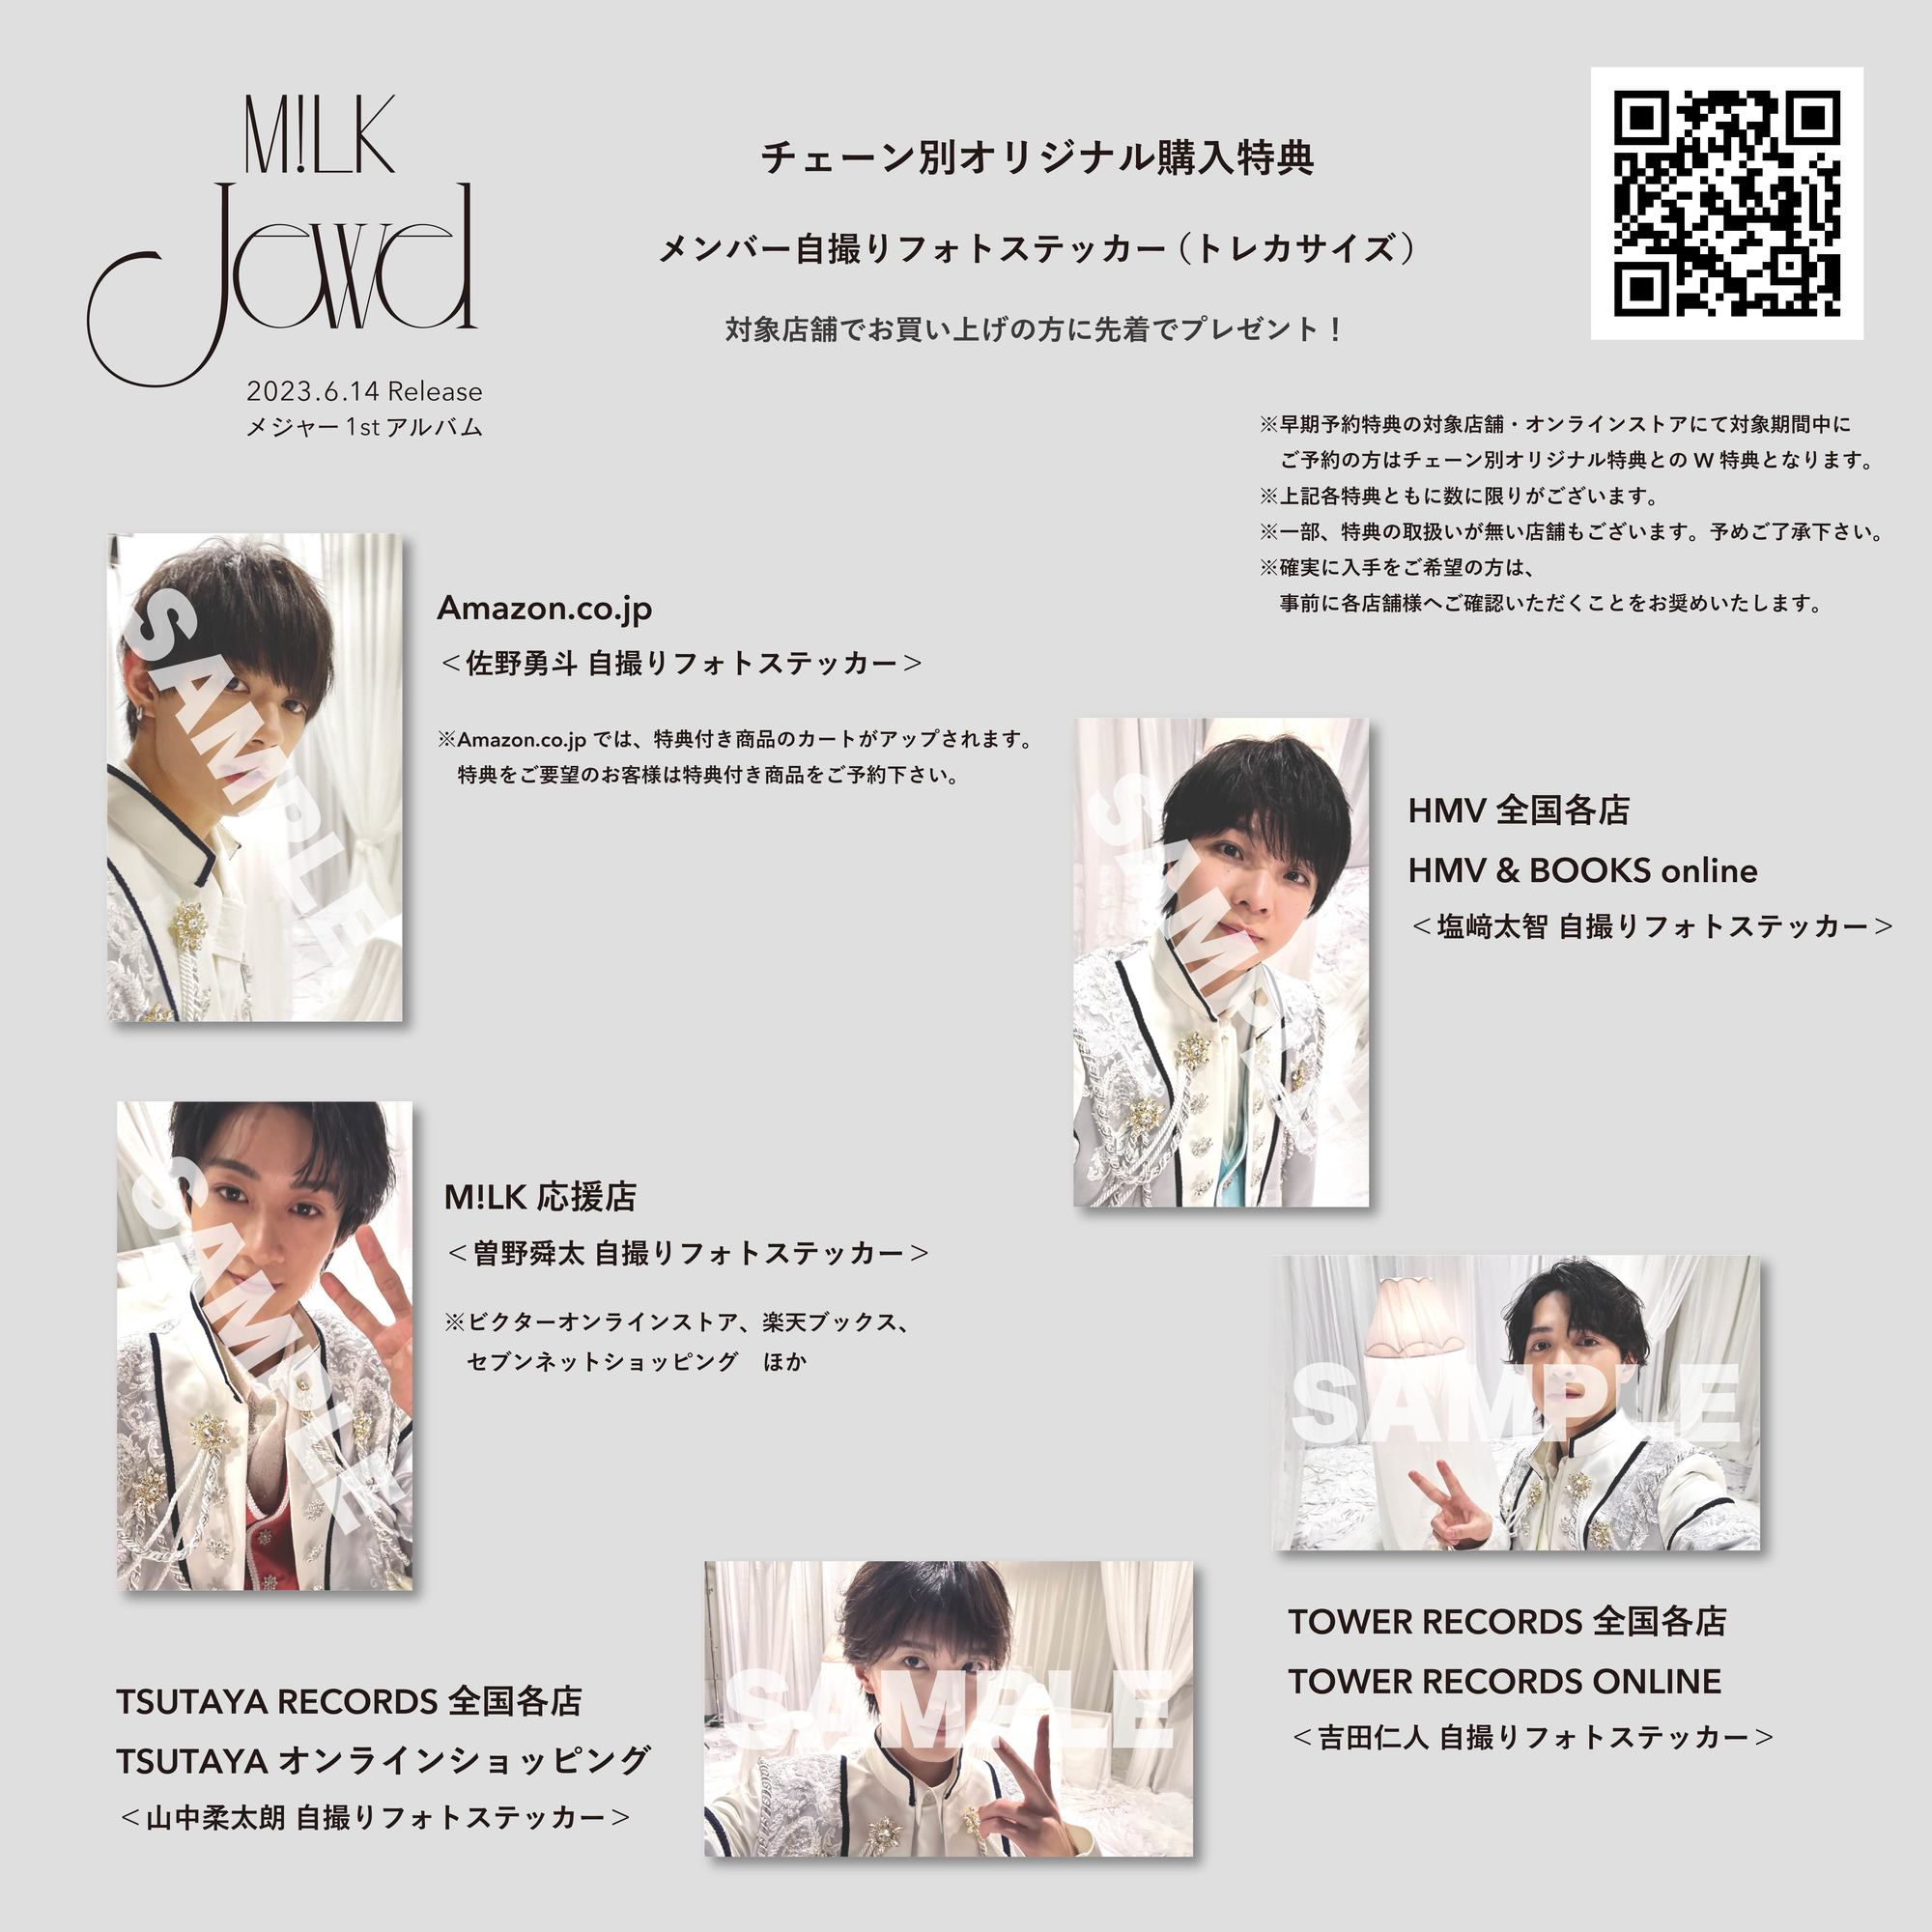 M!LK 6月14日(水)リリース メジャー1stアルバム「Jewel」発売記念 早期